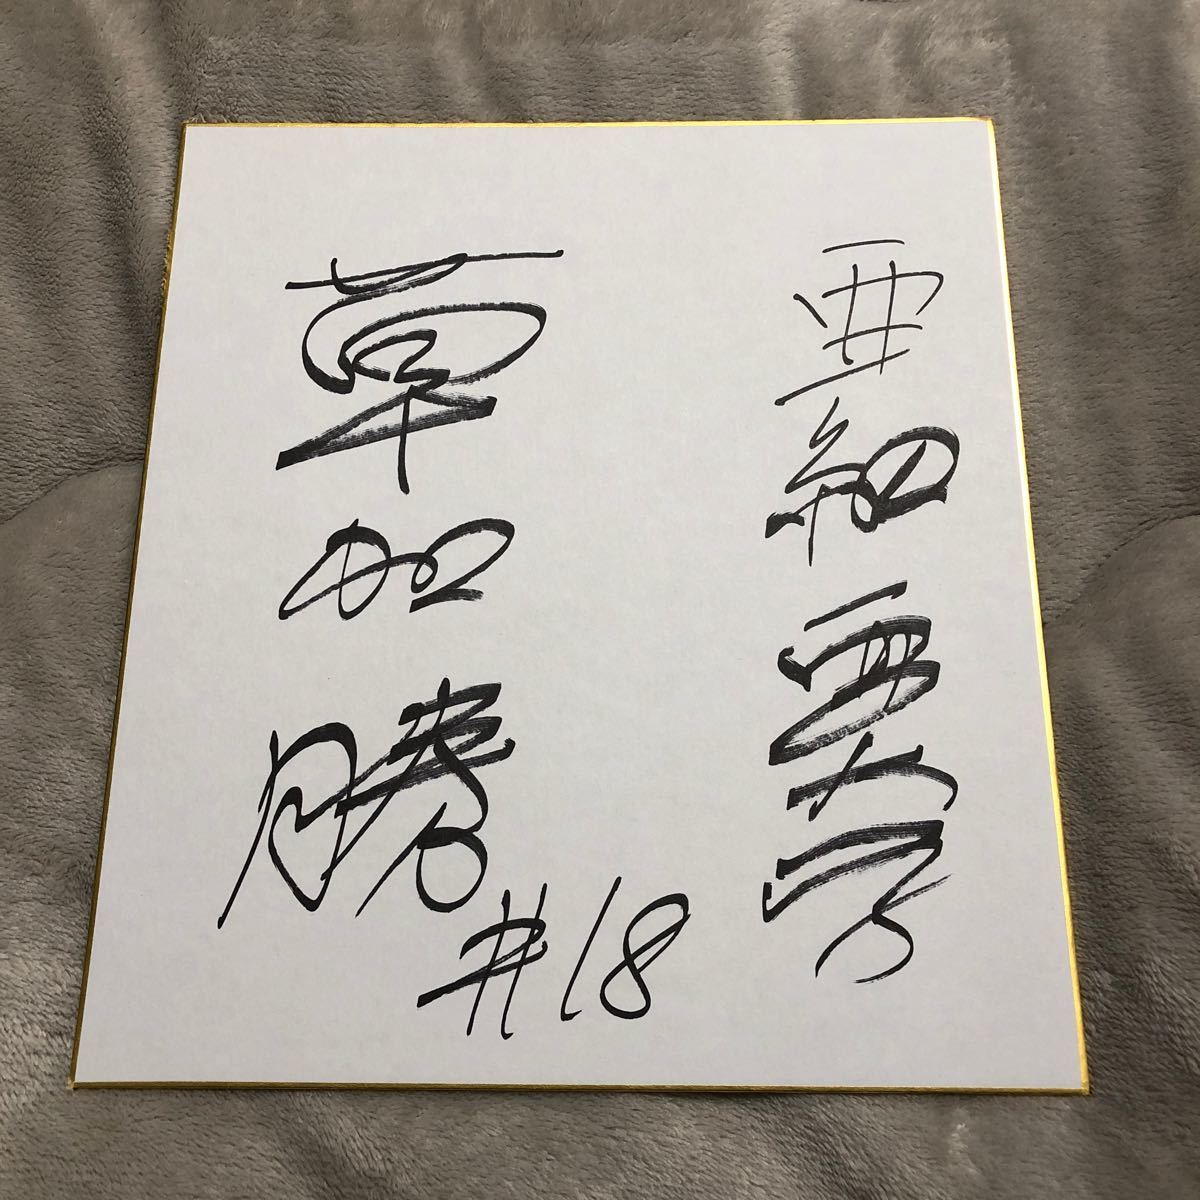 中日龙队 索卡胜 亲笔签名彩色纸 新人, 棒球, 纪念品, 相关商品, 符号